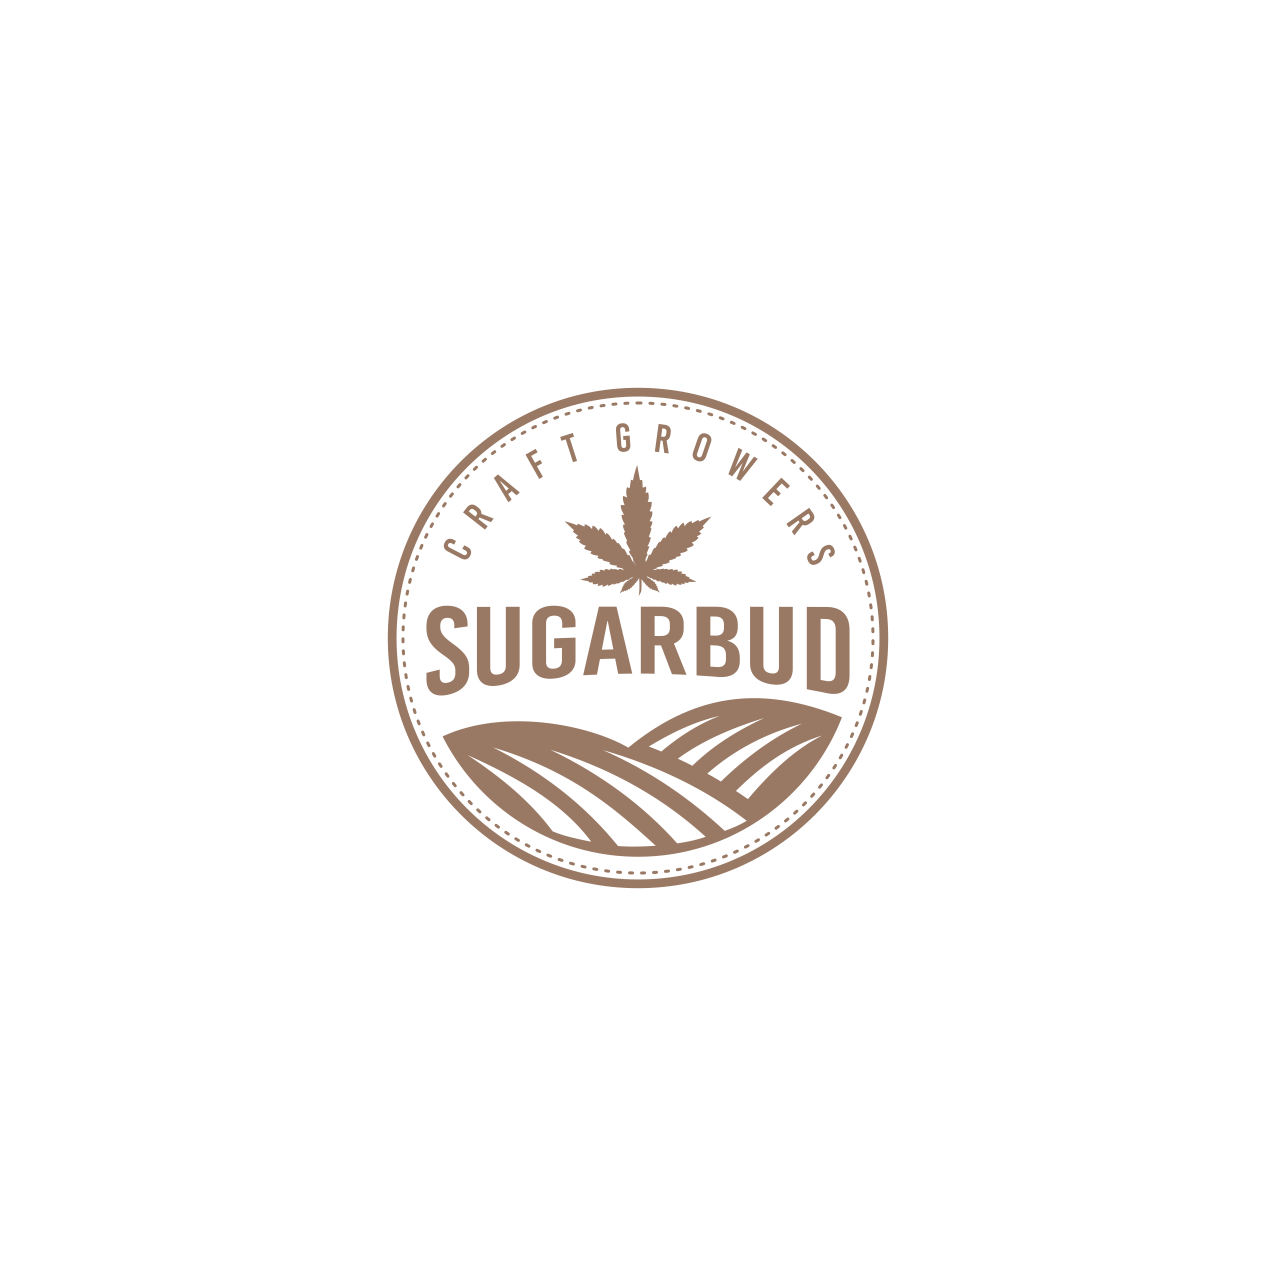 SugarBud Craft Growers.png